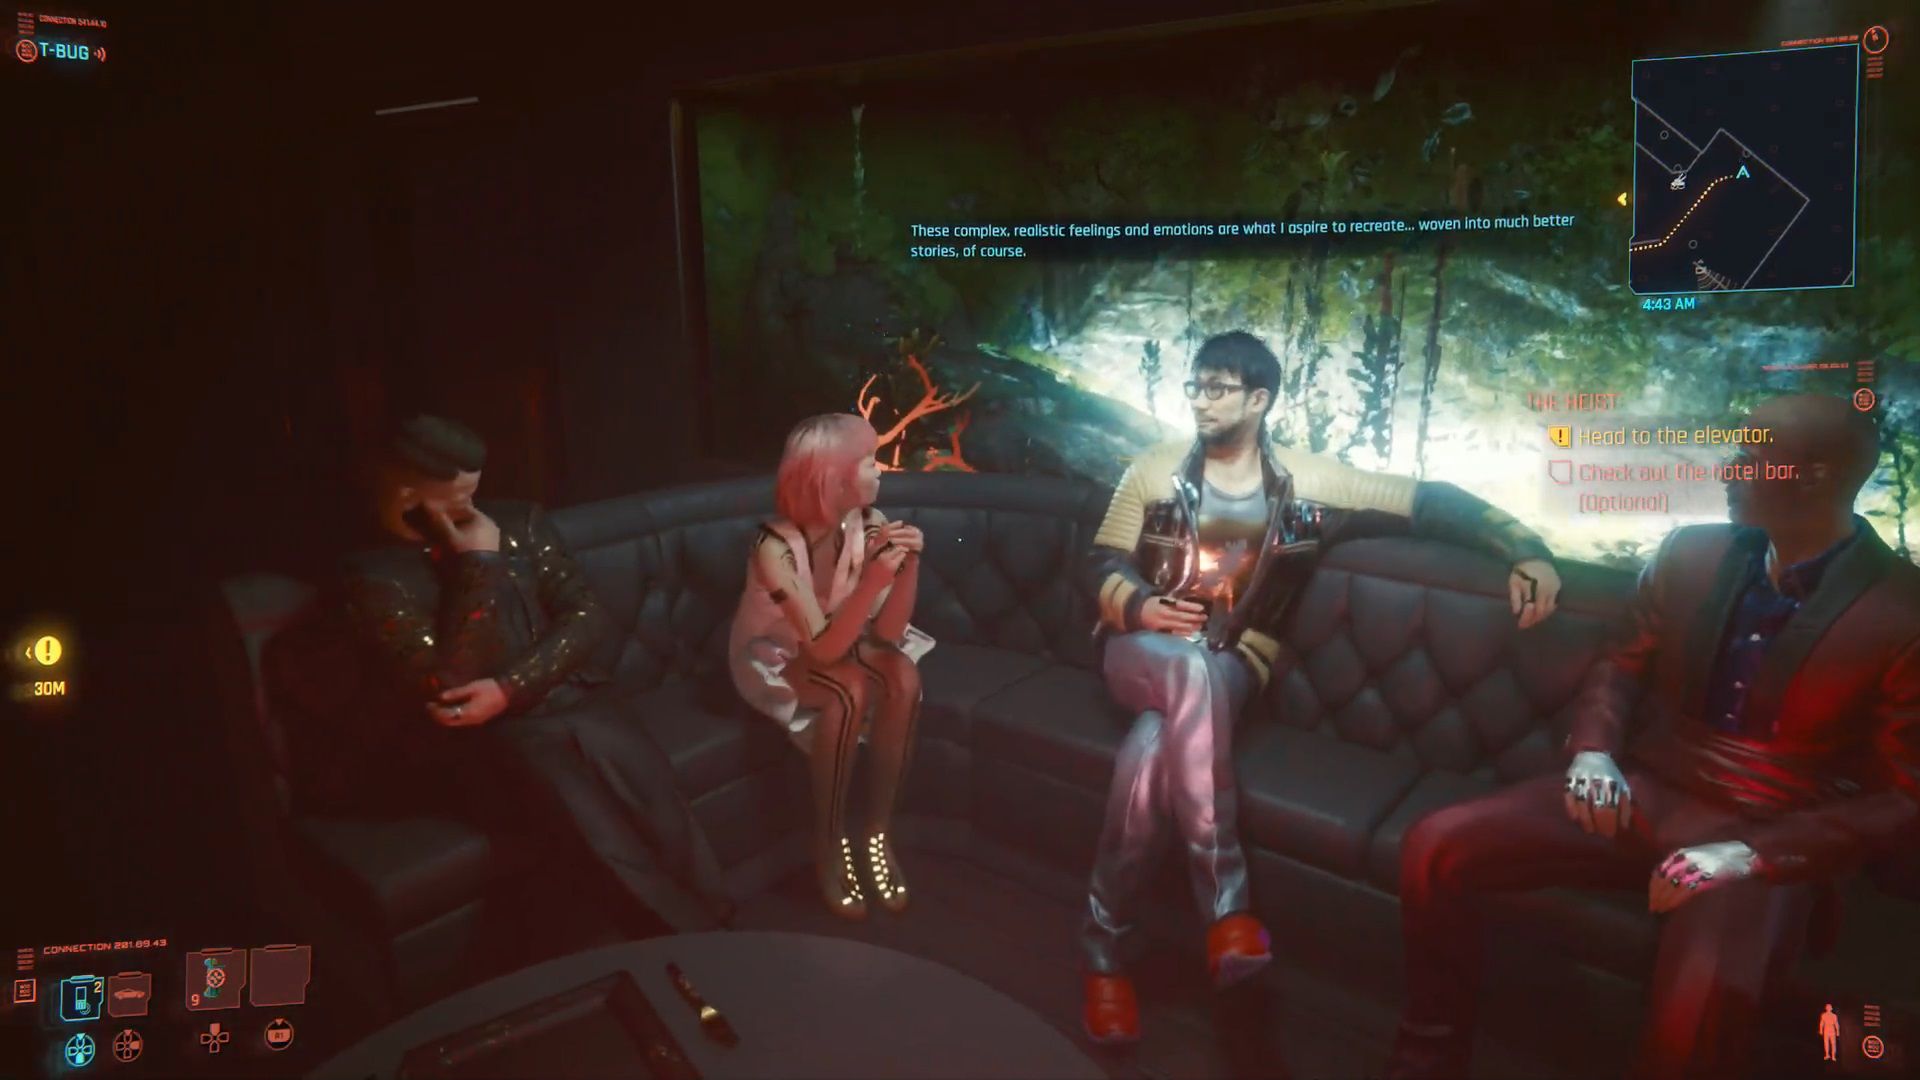  Nagisa Ōshima talking in a bar, in Cyberpunk 2077.